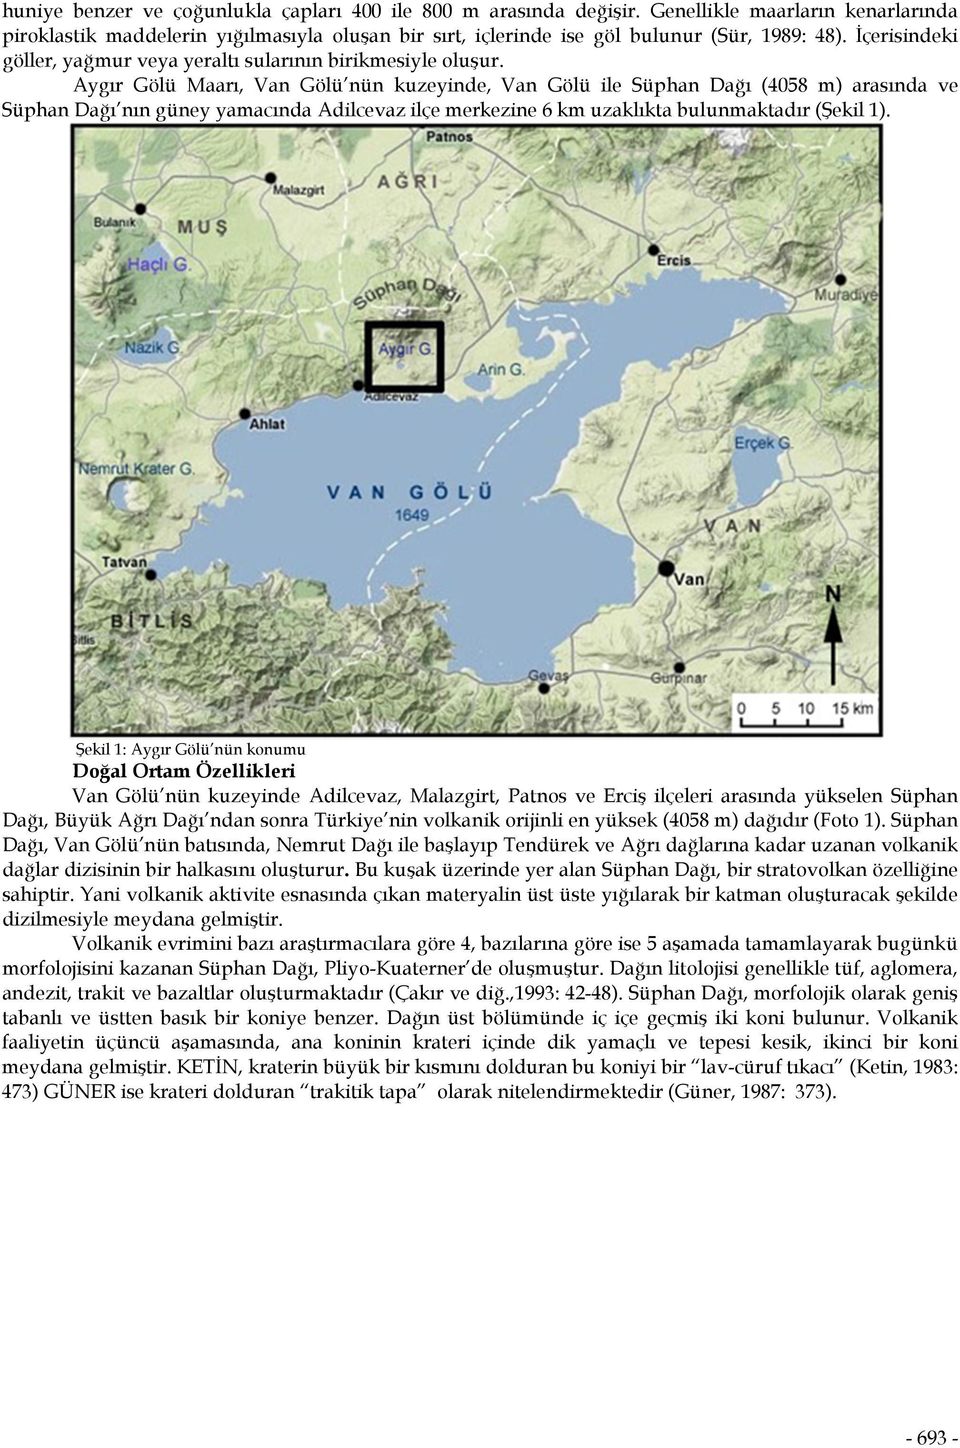 Aygır Gölü Maarı, Van Gölü nün kuzeyinde, Van Gölü ile Süphan Dağı (4058 m) arasında ve Süphan Dağı nın güney yamacında Adilcevaz ilçe merkezine 6 km uzaklıkta bulunmaktadır (Şekil 1).